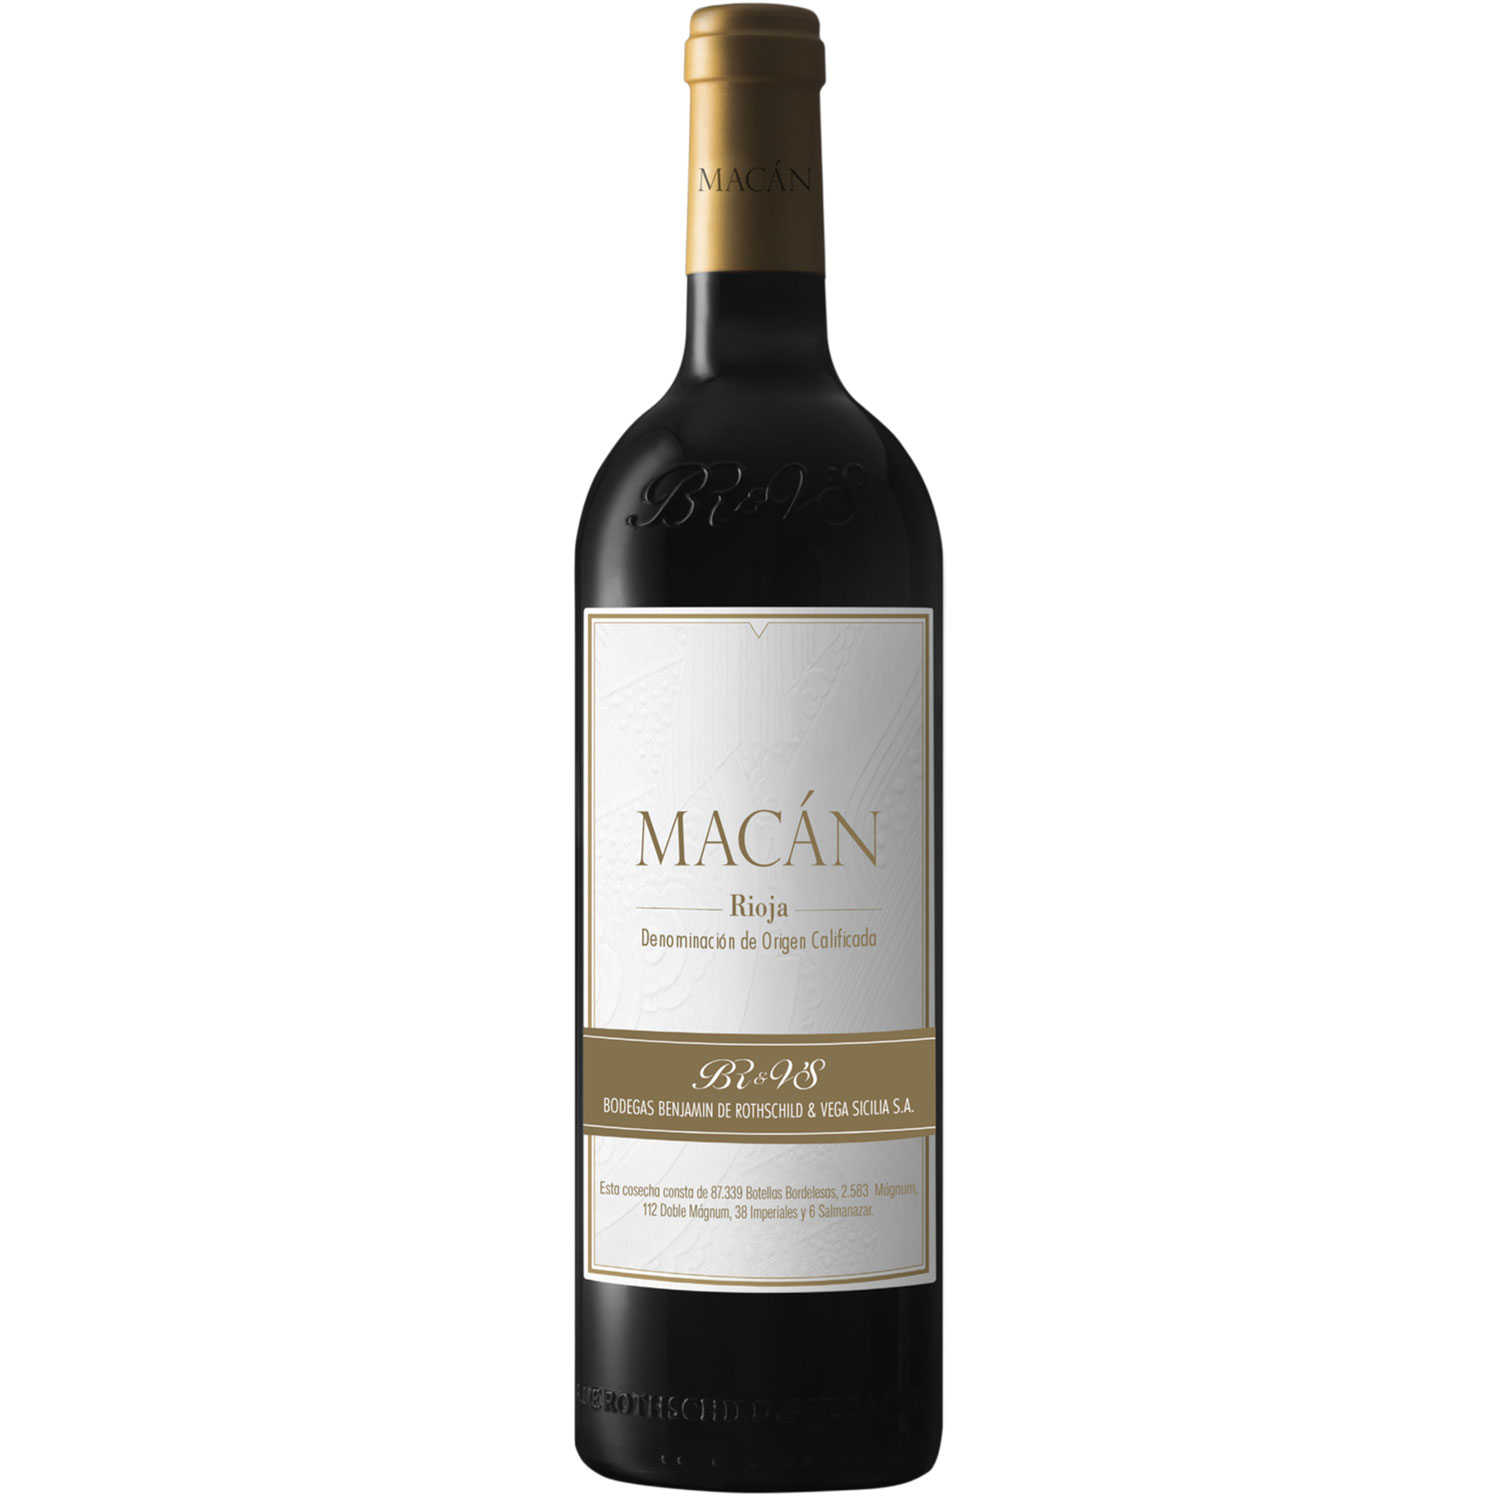 Vega Sicilia Macan Rioja 2019